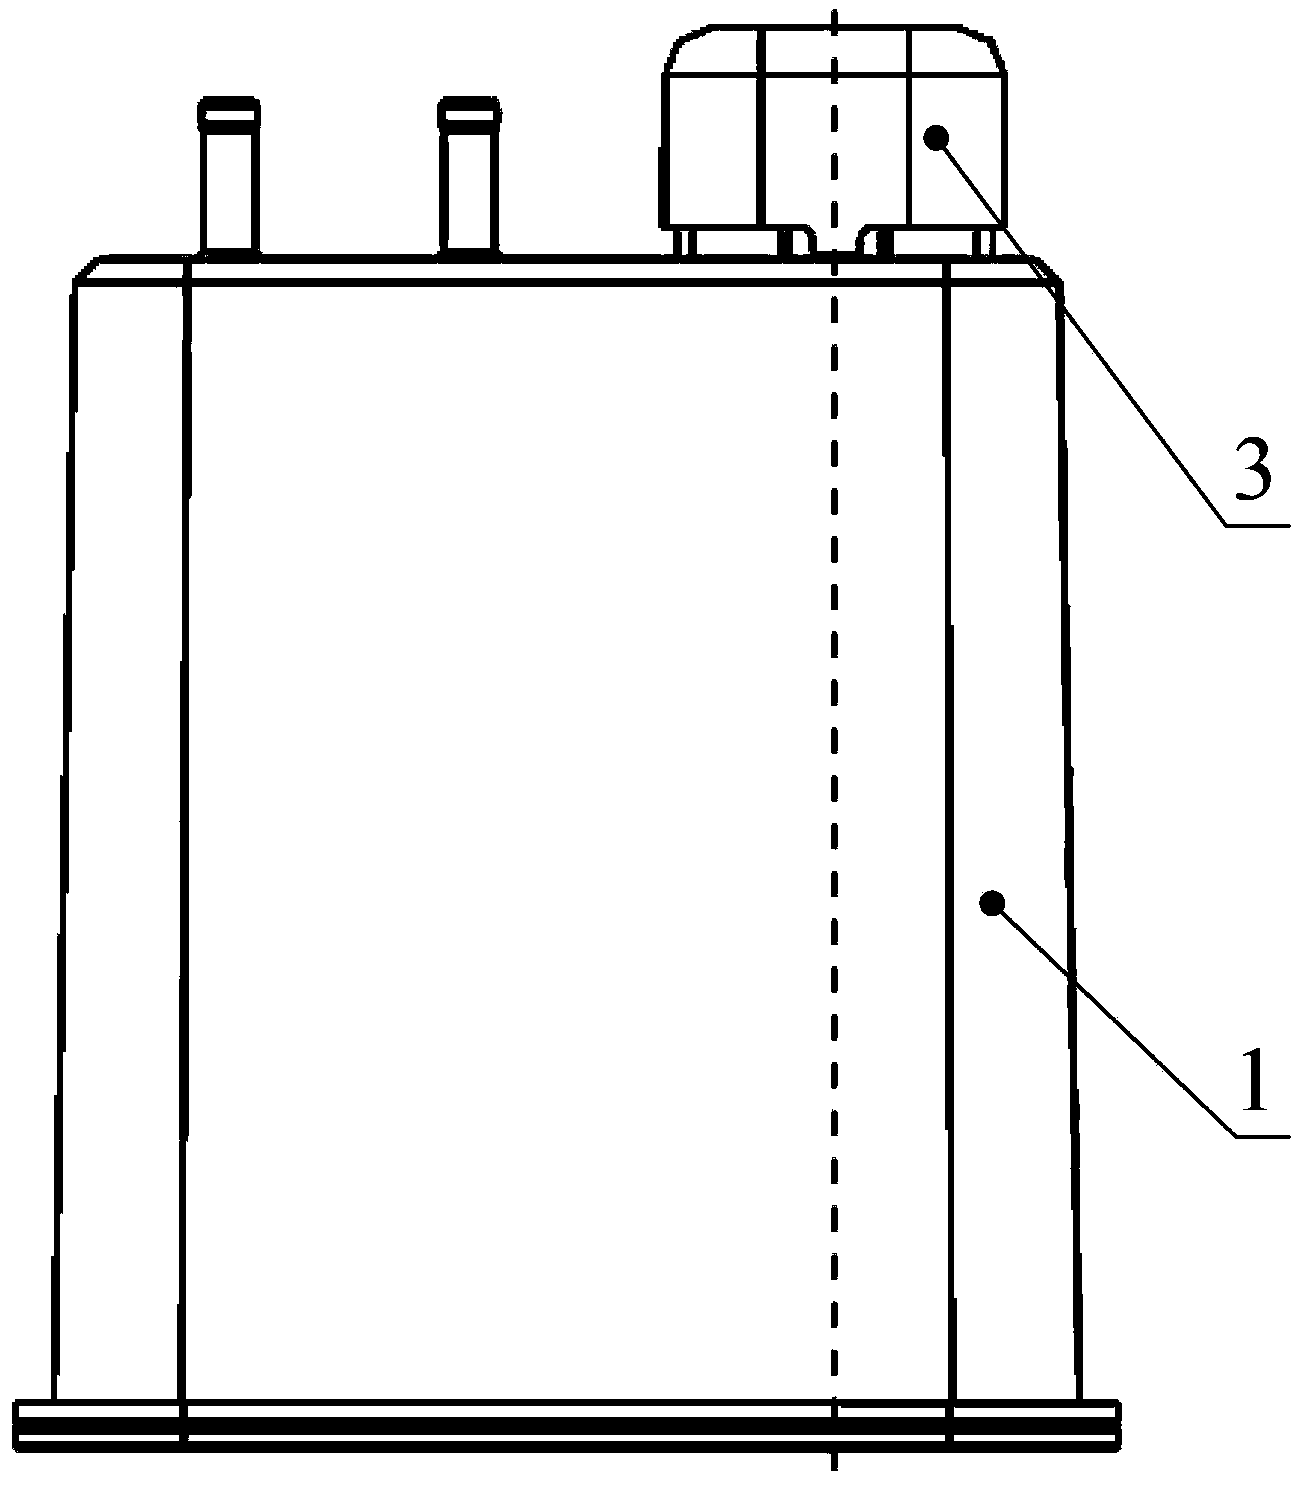 Novel carbon tank structure